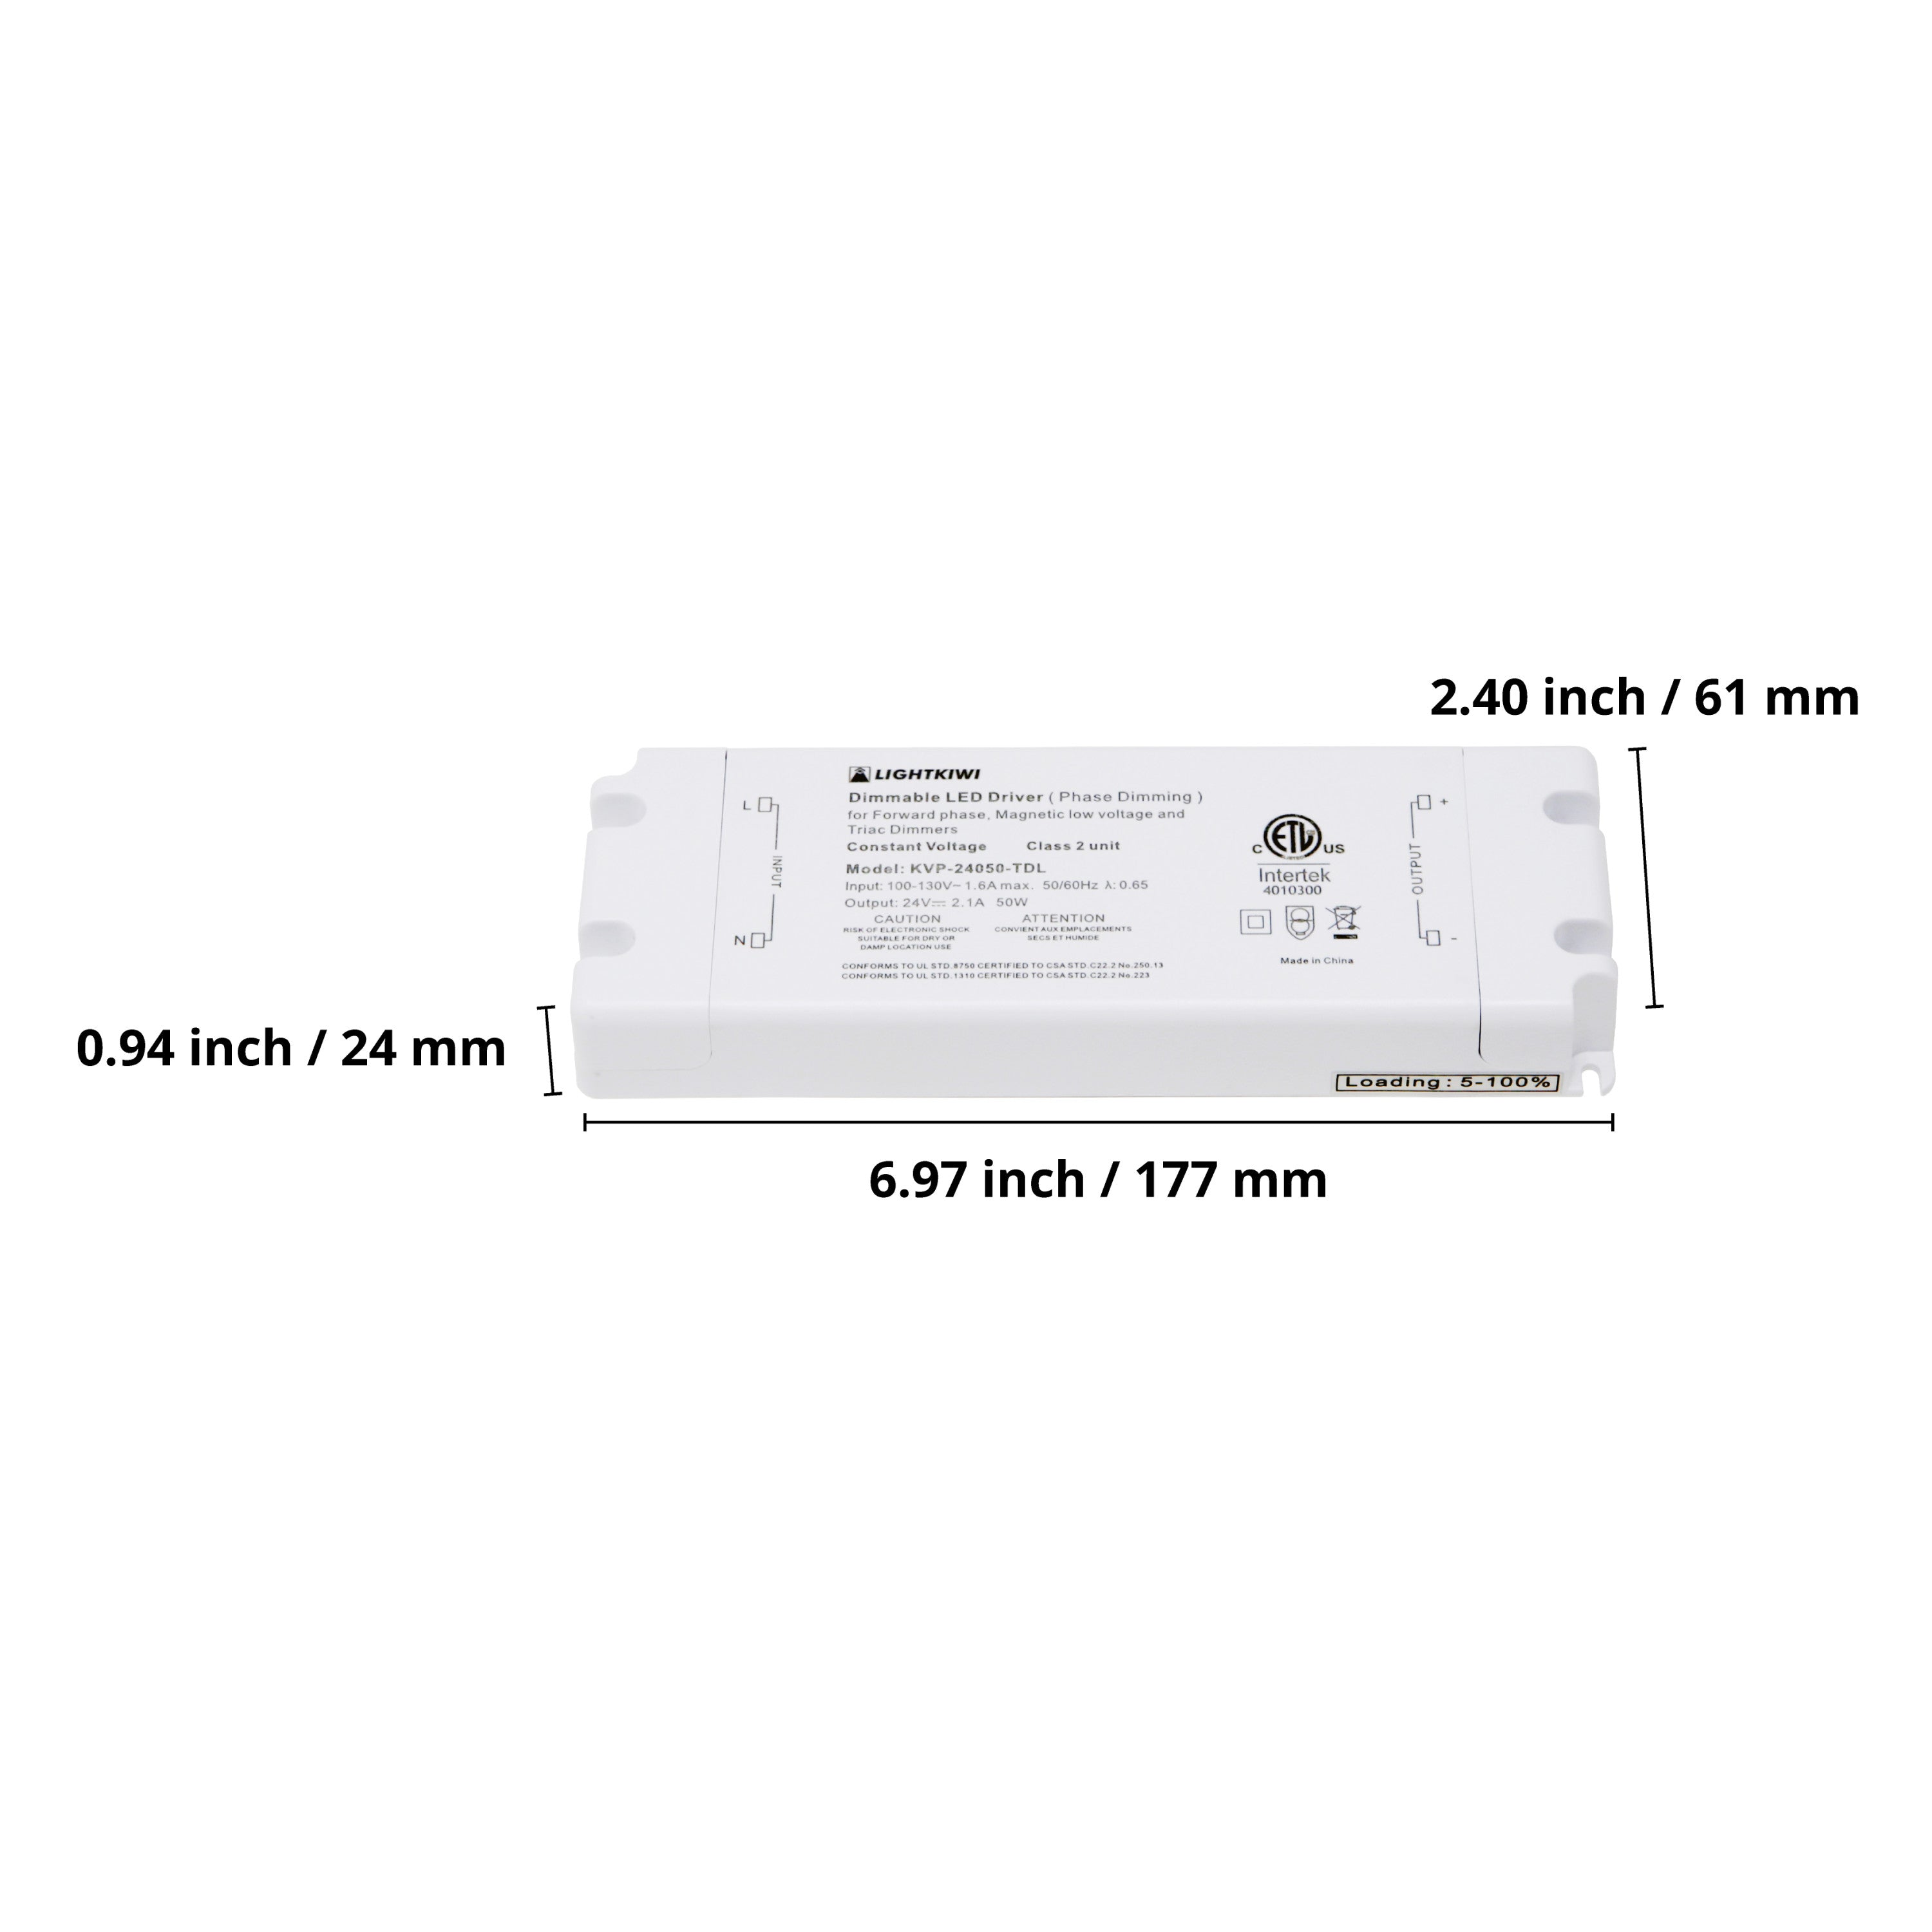 Dunn 12 Inch Cool White Modular LED Under Cabinet Lighting - Hardwire Kit (6 Panel)